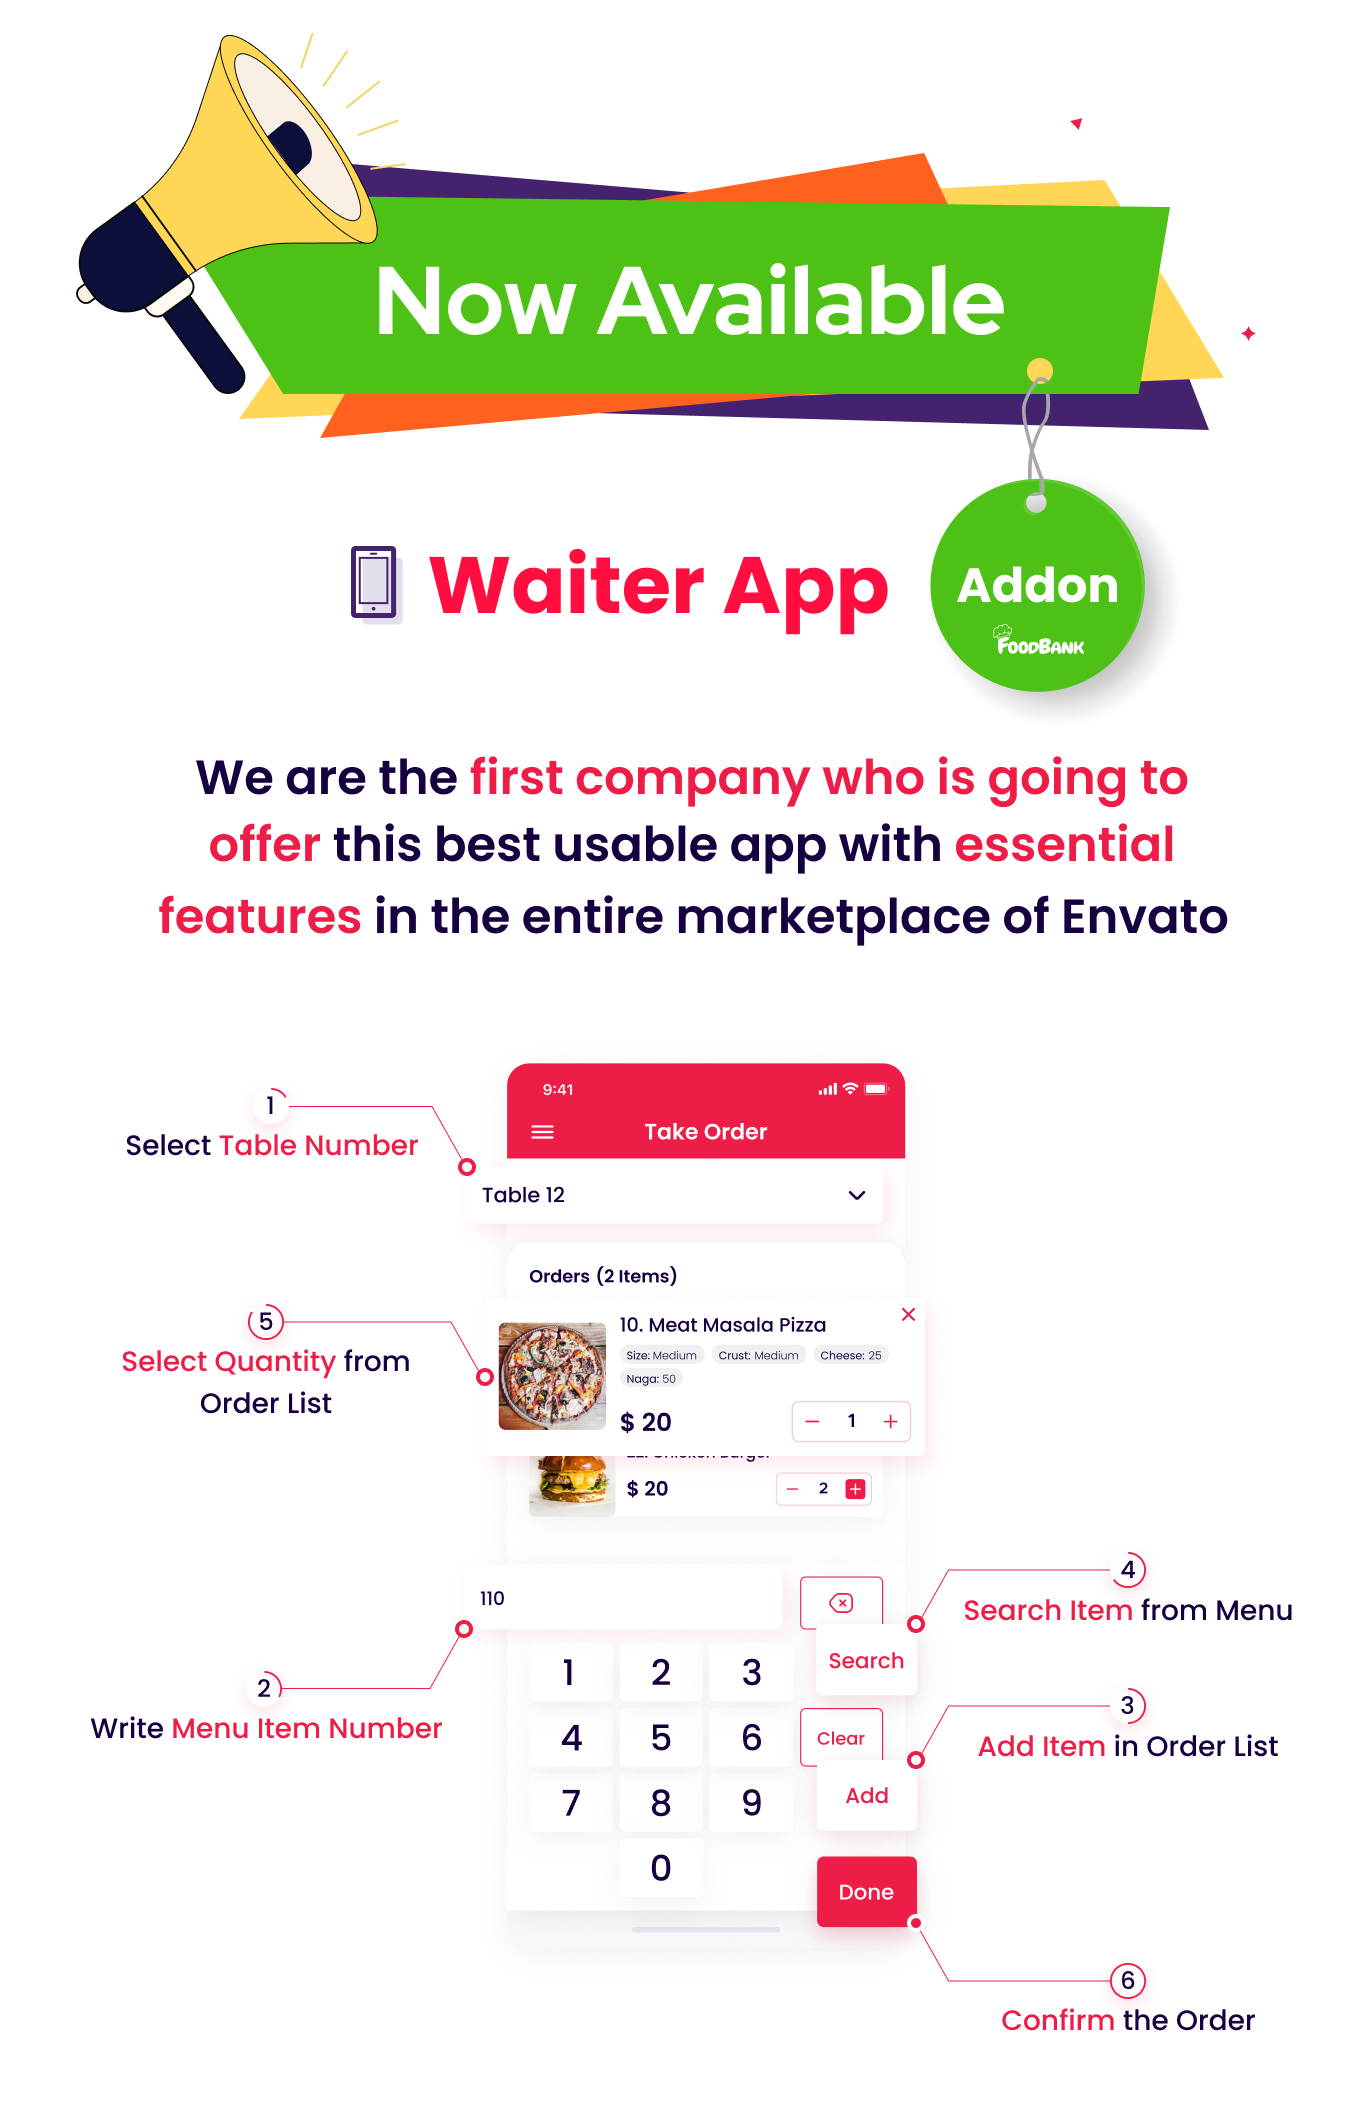 FoodBank waiter app coming soon